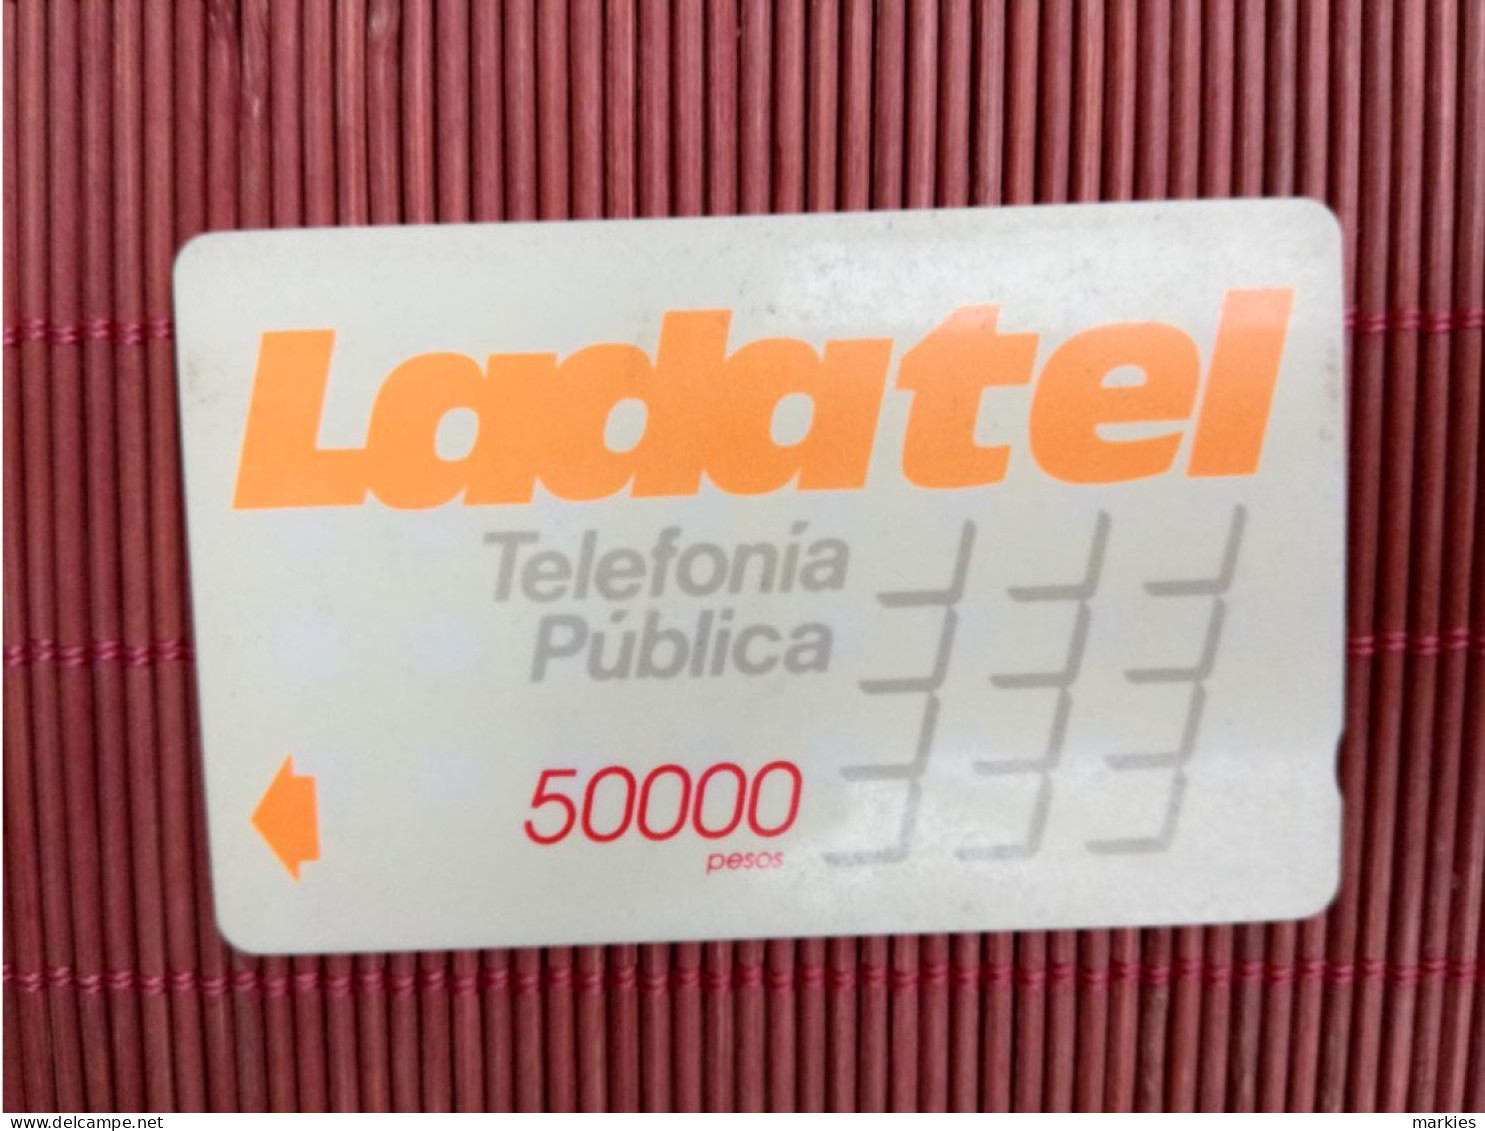 Phonecard Mexico 9MEXD Ladatel Used Rare - Mexique